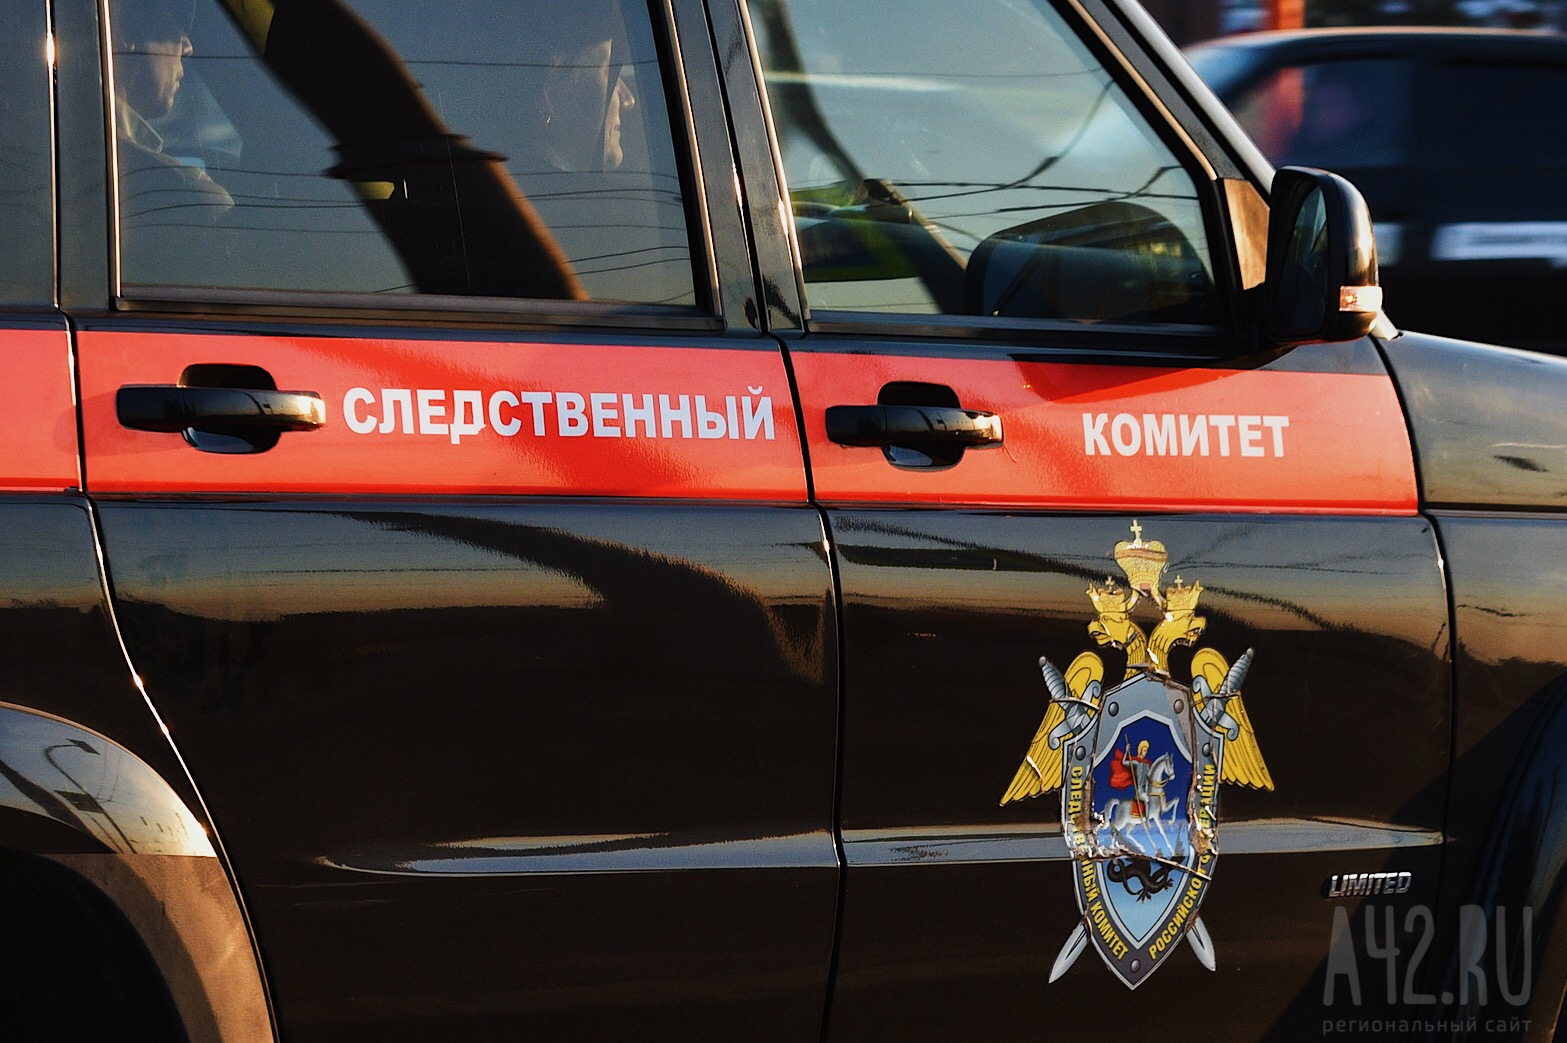 Пьяный подросток избил до смерти мужчину в автобусе в Тверской области